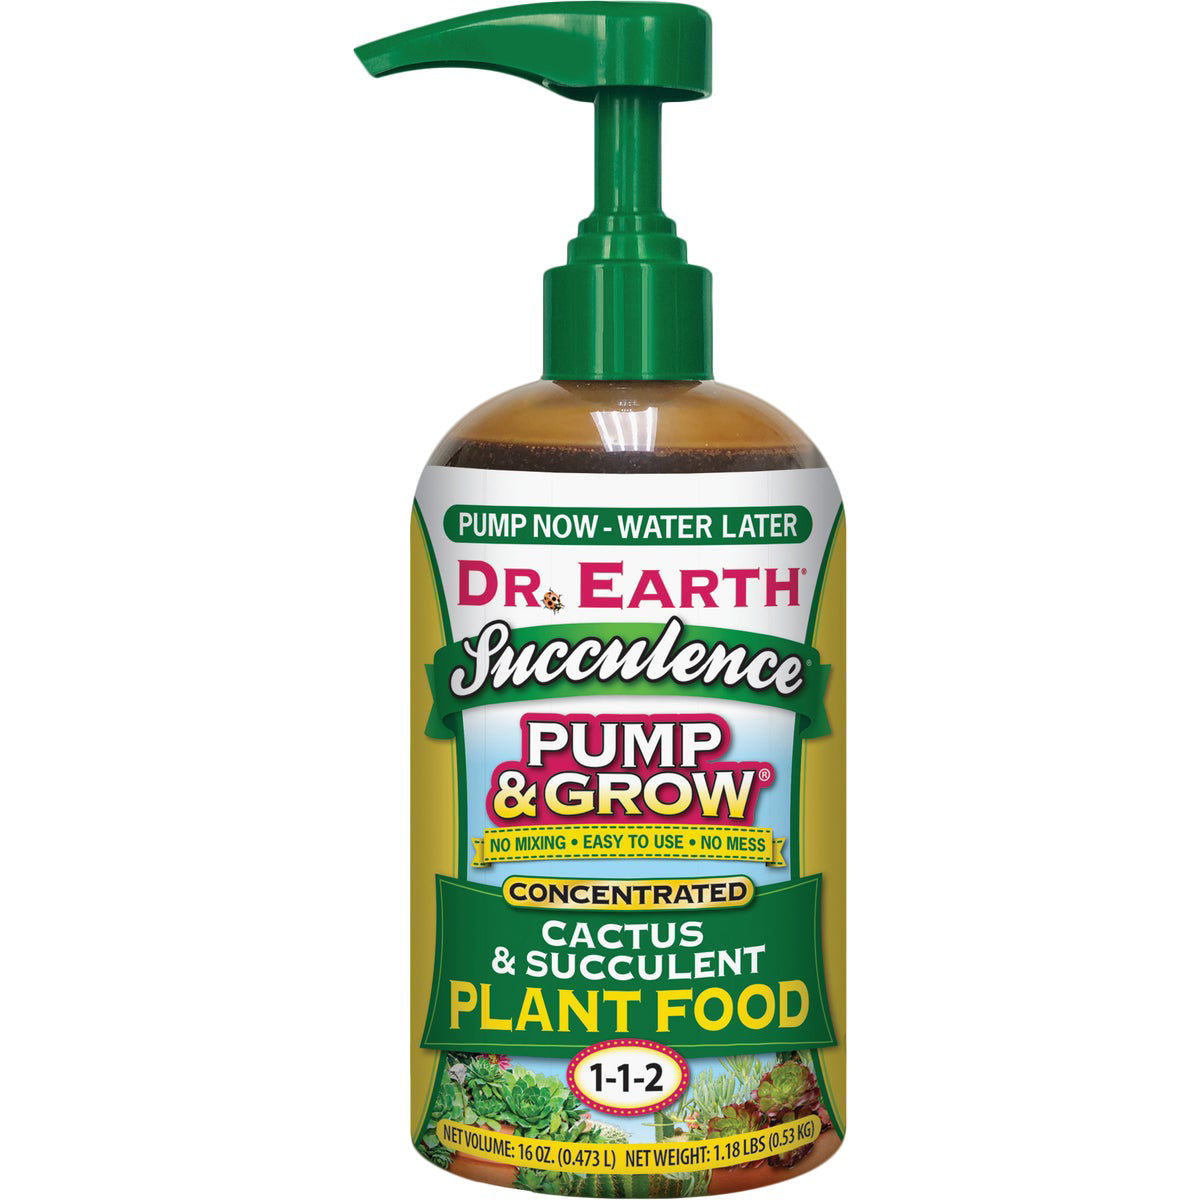 Dr Earth Succulence Pump & Grow Plant Food